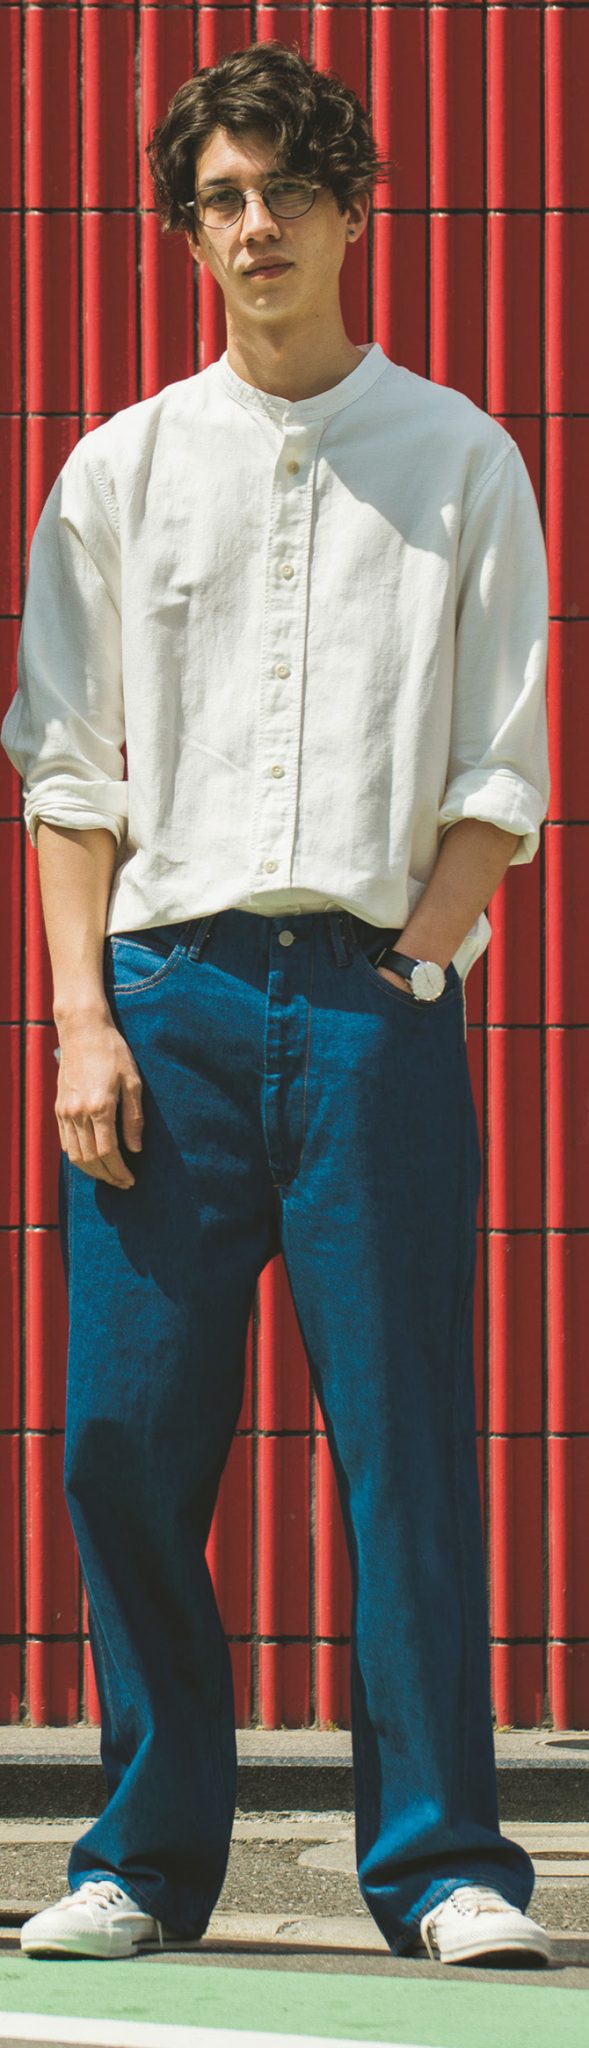 30代に人気のコーデ5位は ゆったりシルエットが鍵のシャツコーデ Men Sjoker Premium メンズファッション雑誌